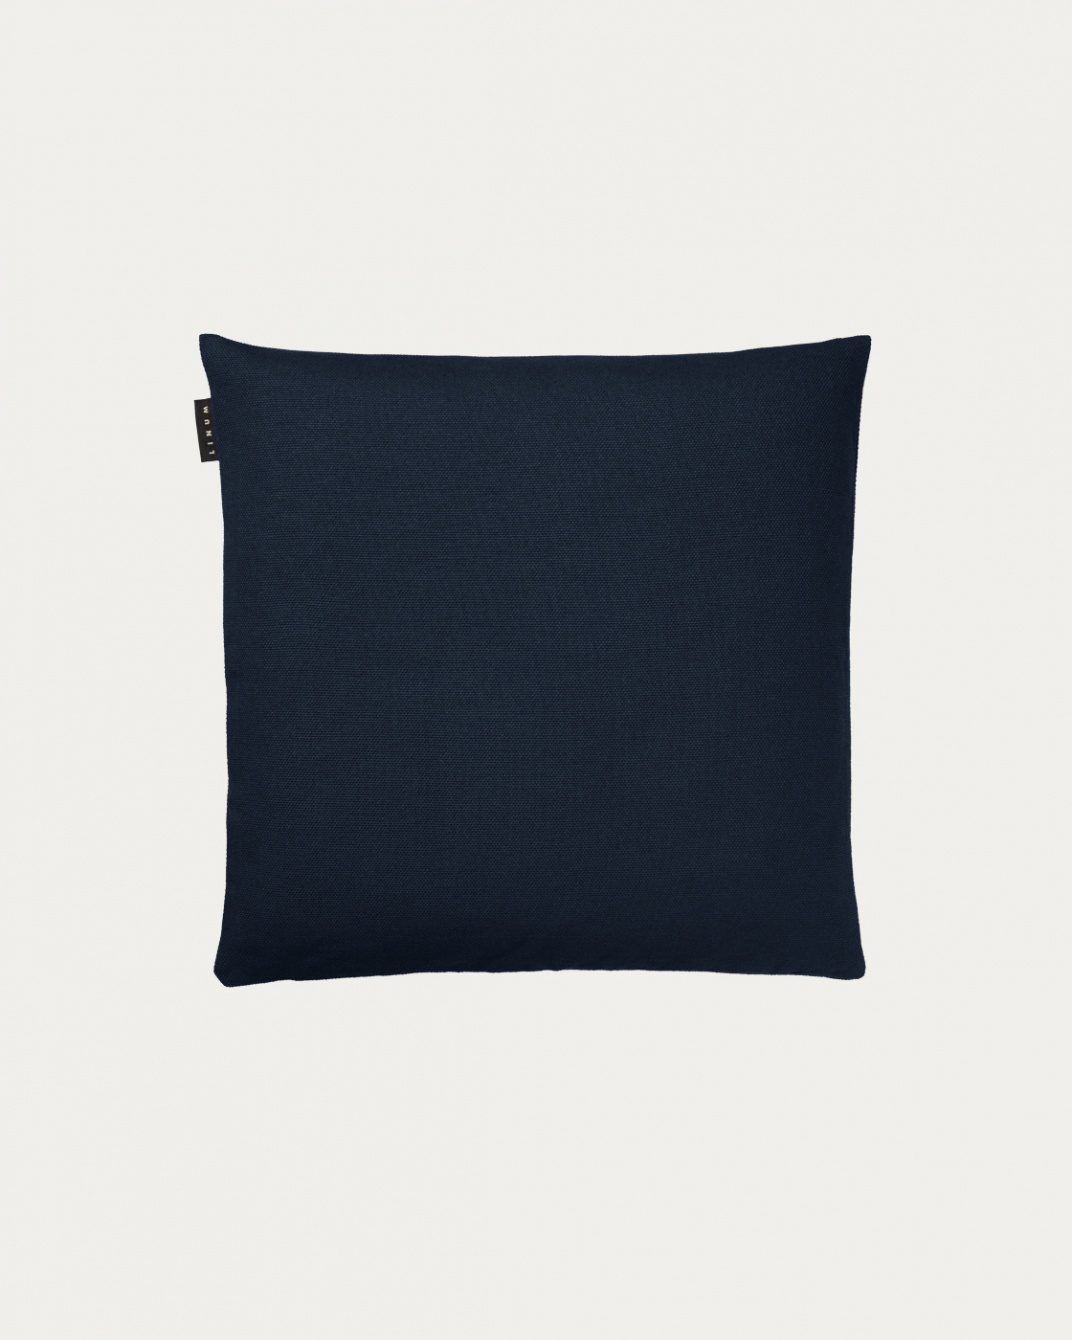 PEPPER Cushion cover 40x40 cm Dark navy blue